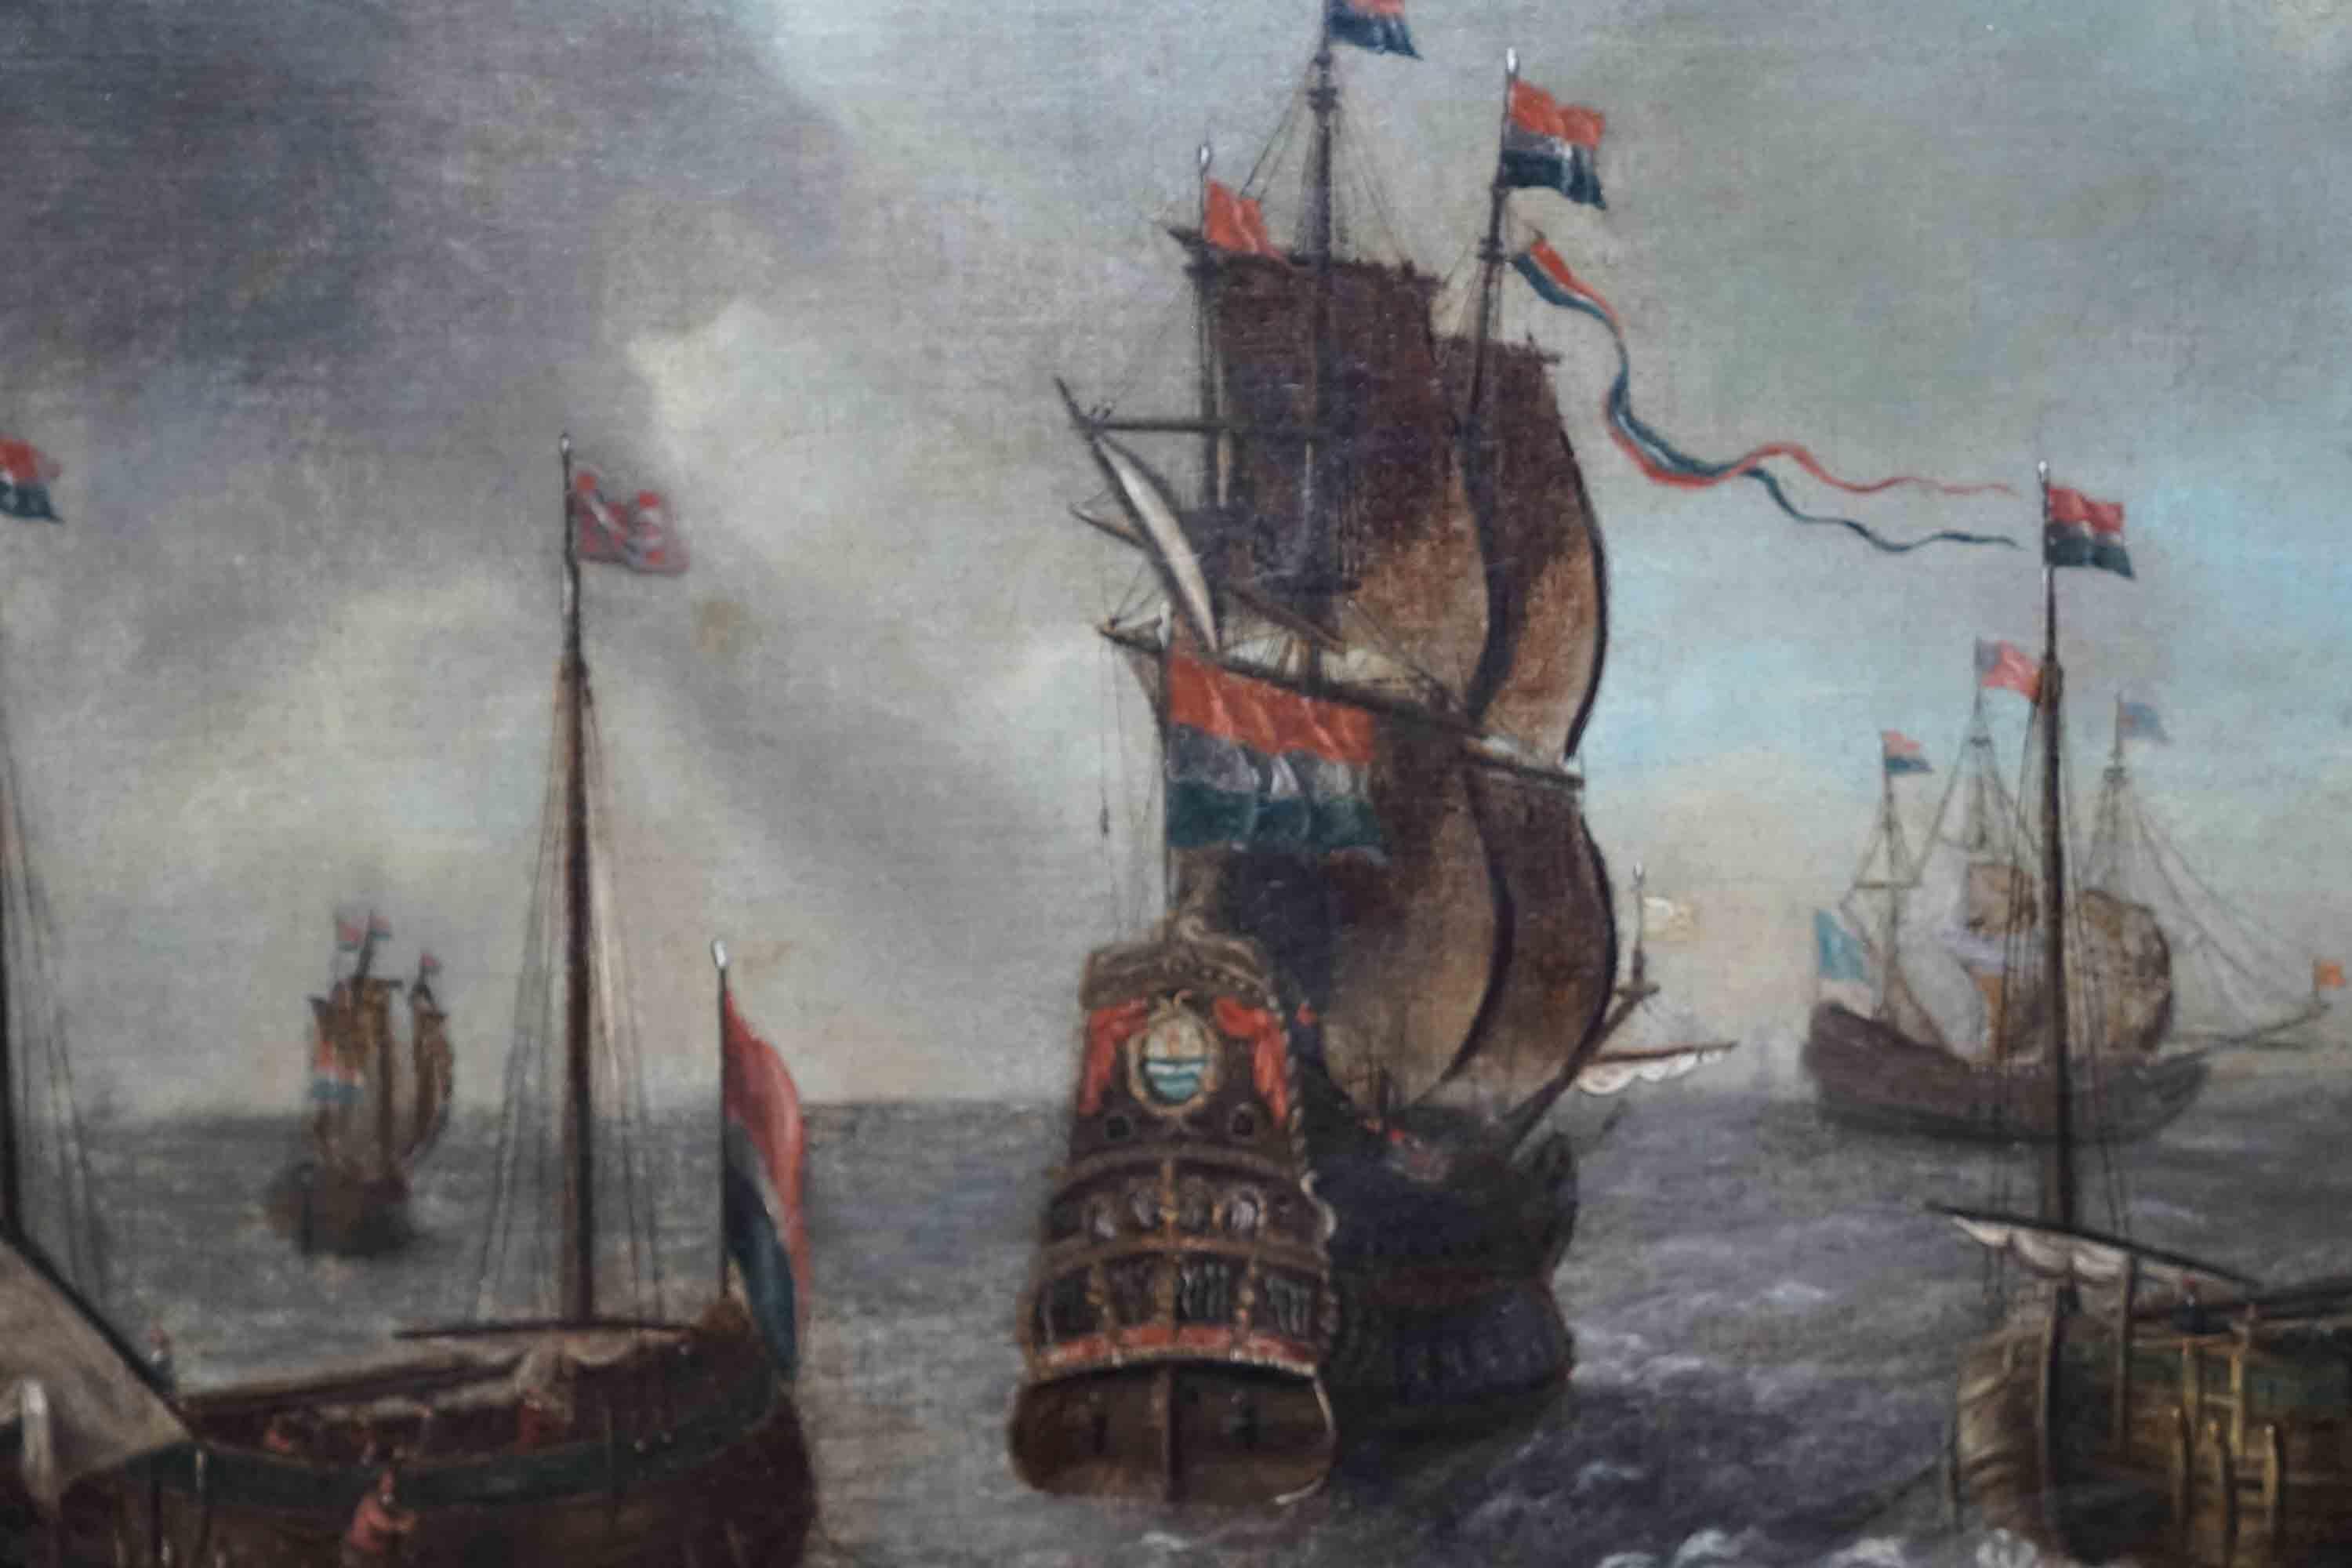 Dieses fantastische niederländische Altmeister-Ölgemälde ist ein Werk des bekannten niederländischen Marinemalers Abraham Storck. Die um 1670 entstandene Komposition zeigt eine Reihe von Schiffen, die in See stechen, mit wehenden Segeln und im Wind